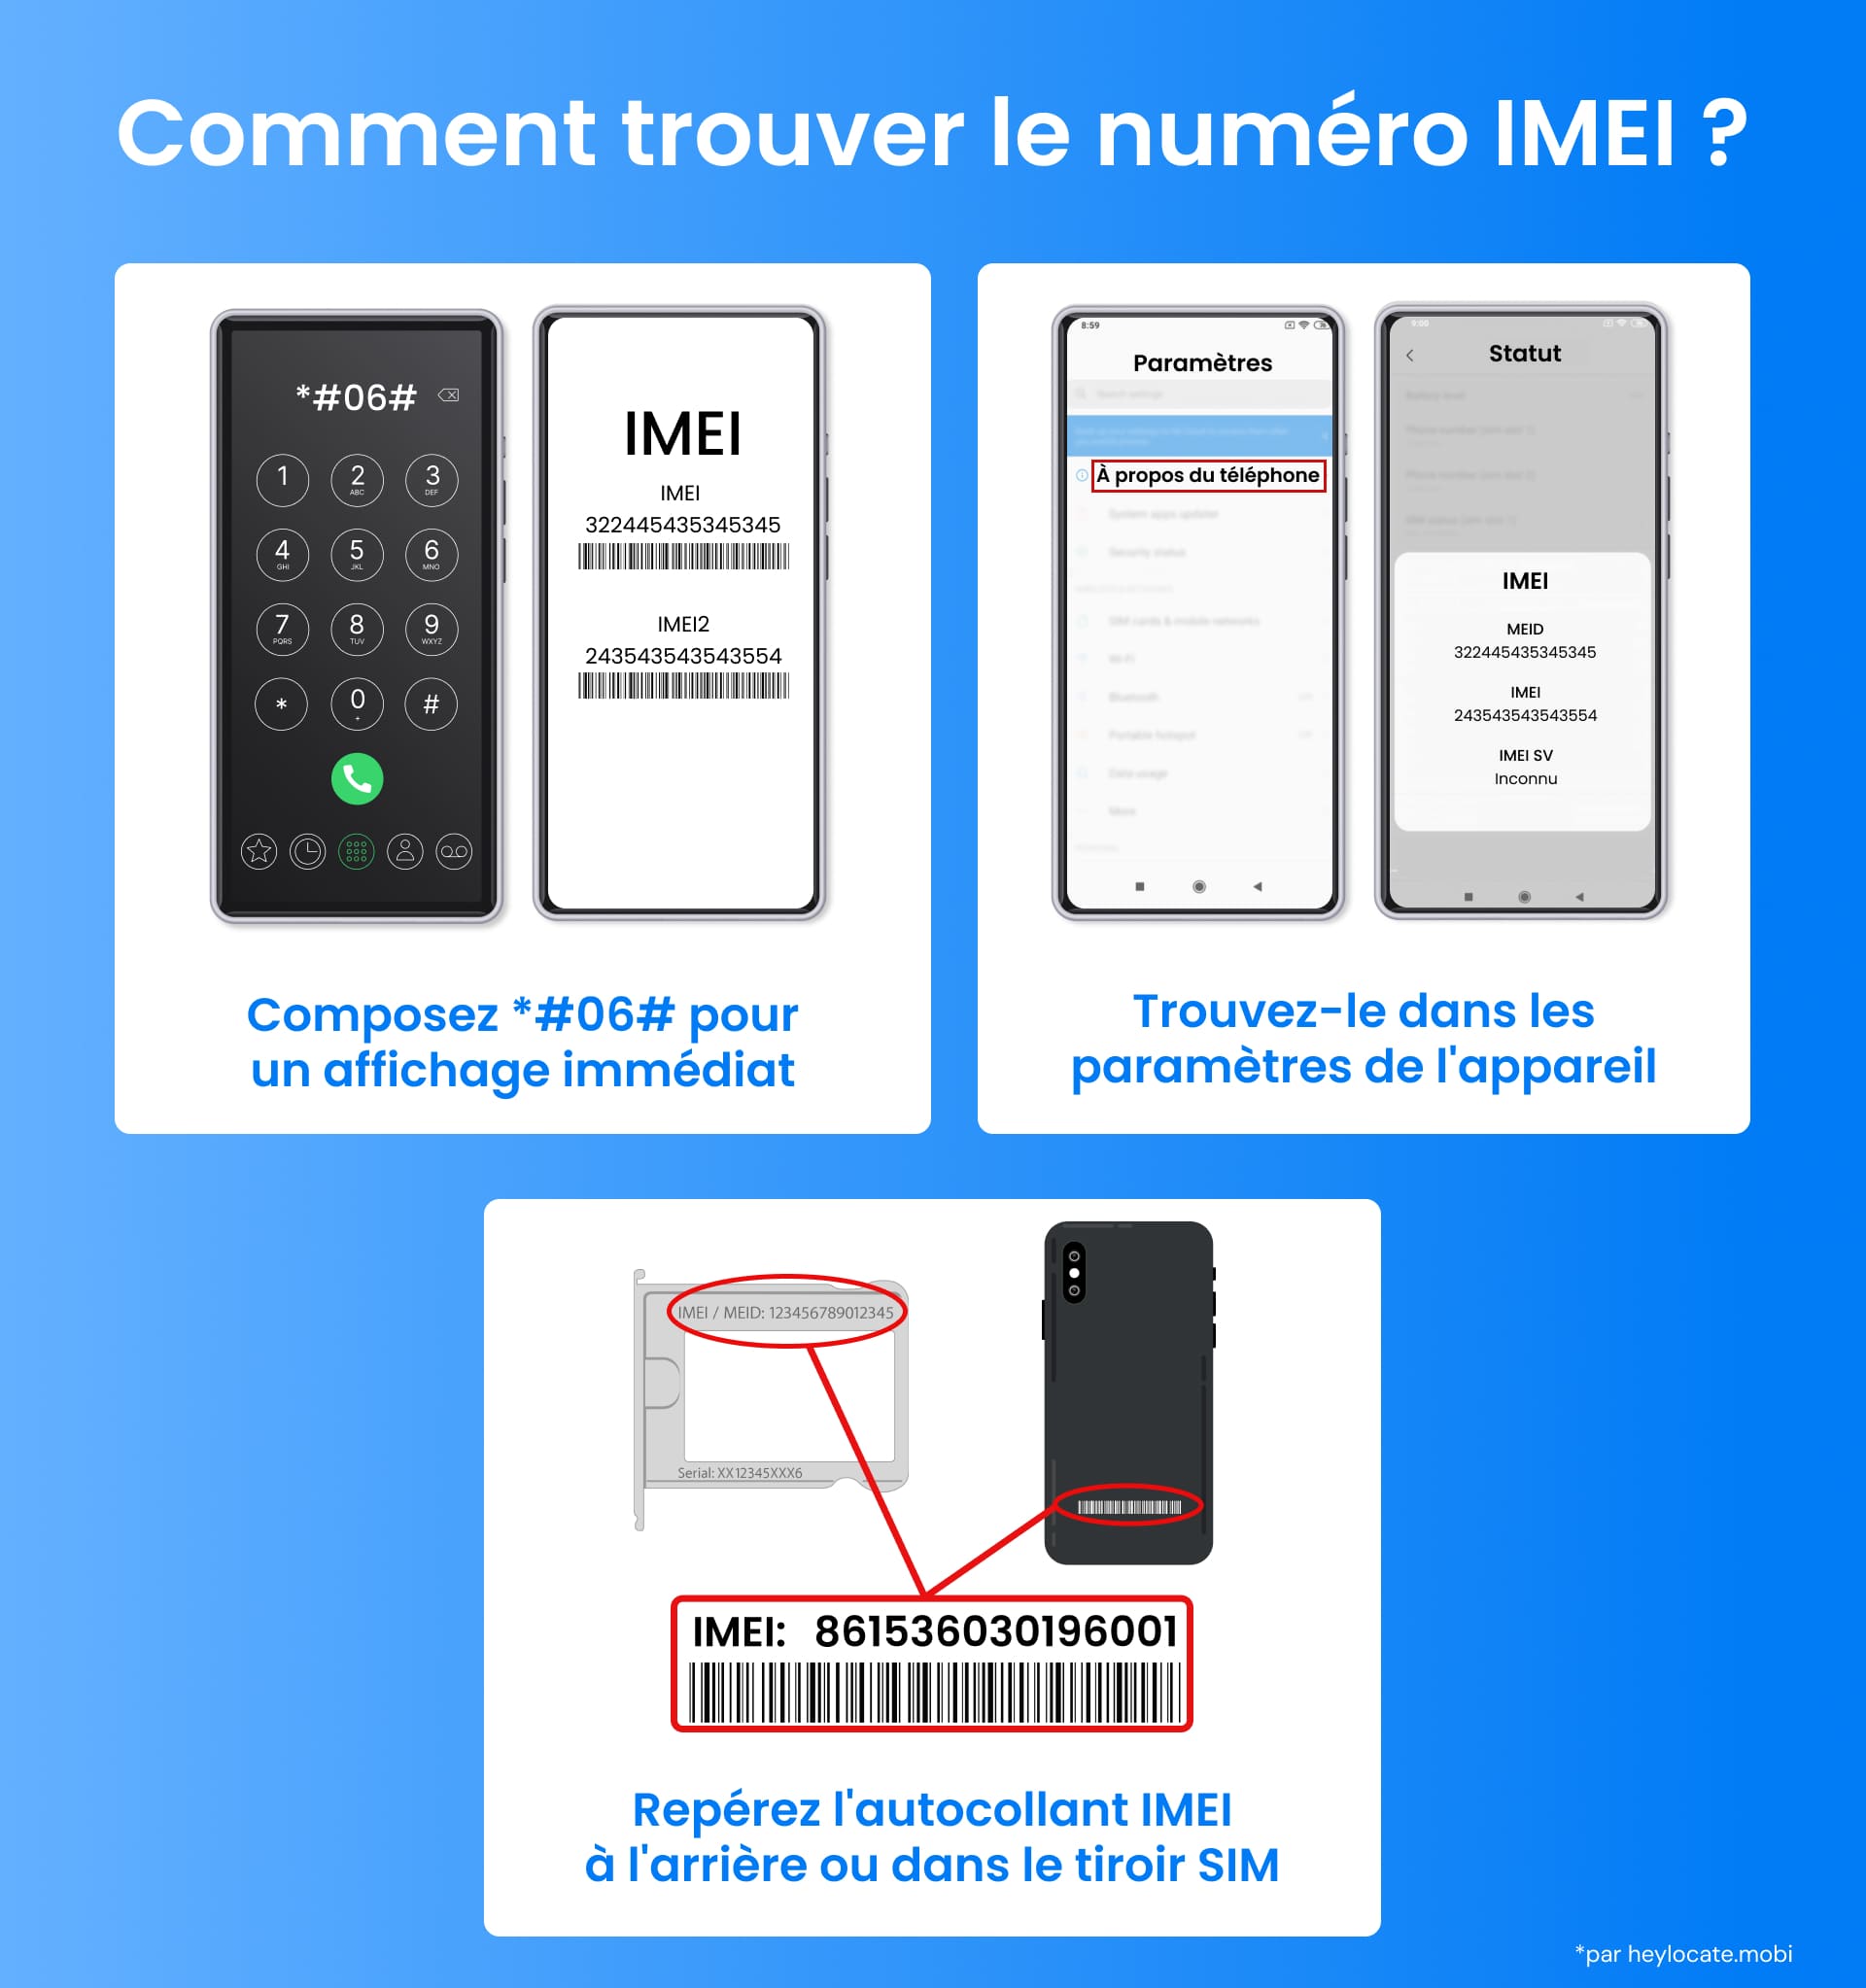 Guide visuel expliquant comment trouver le numéro IMEI d'un téléphone en composant un code, en utilisant les paramètres de l'appareil ou sur l'appareil lui-même.